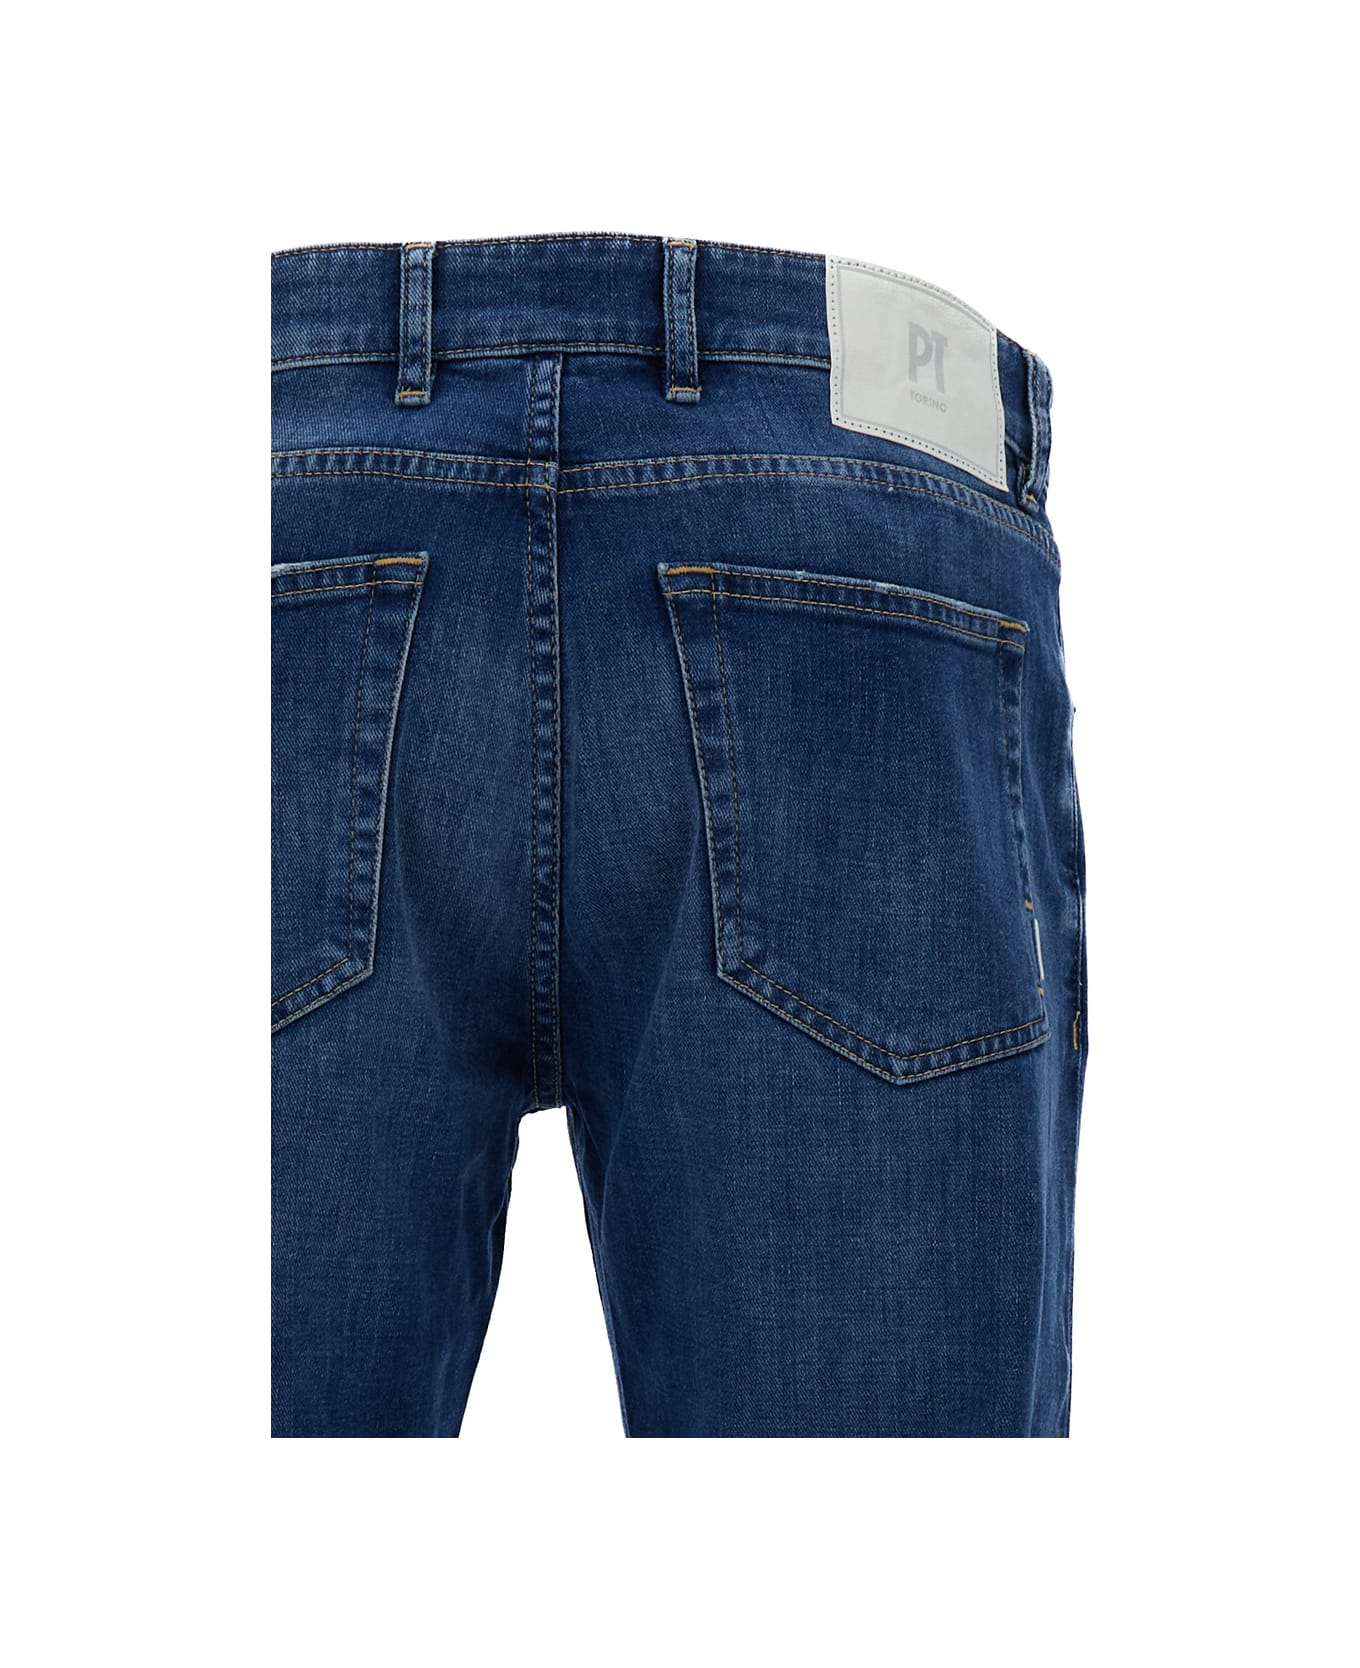 PT Torino Dark Blue Medium Waist 'swing' Jeans In Cotton Blend Man - Blu